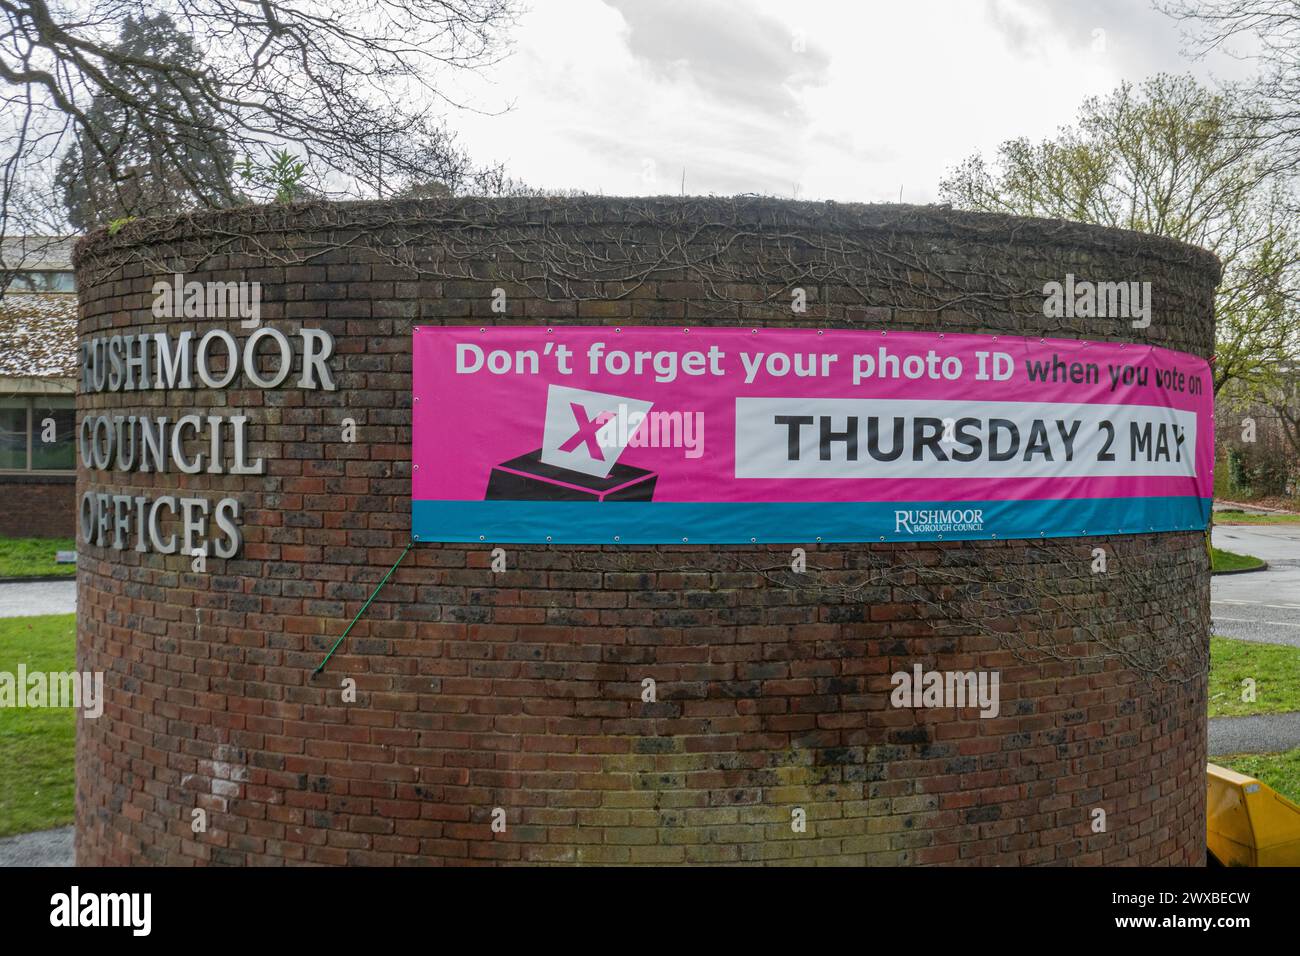 Concept d'identité avec photo de l'électeur : bannière disant n'oubliez pas votre photo d'identité lorsque vous votez le jeudi 2 mai dans les bureaux du conseil de Rushmoor, Hampshire, Angleterre, Royaume-Uni Banque D'Images